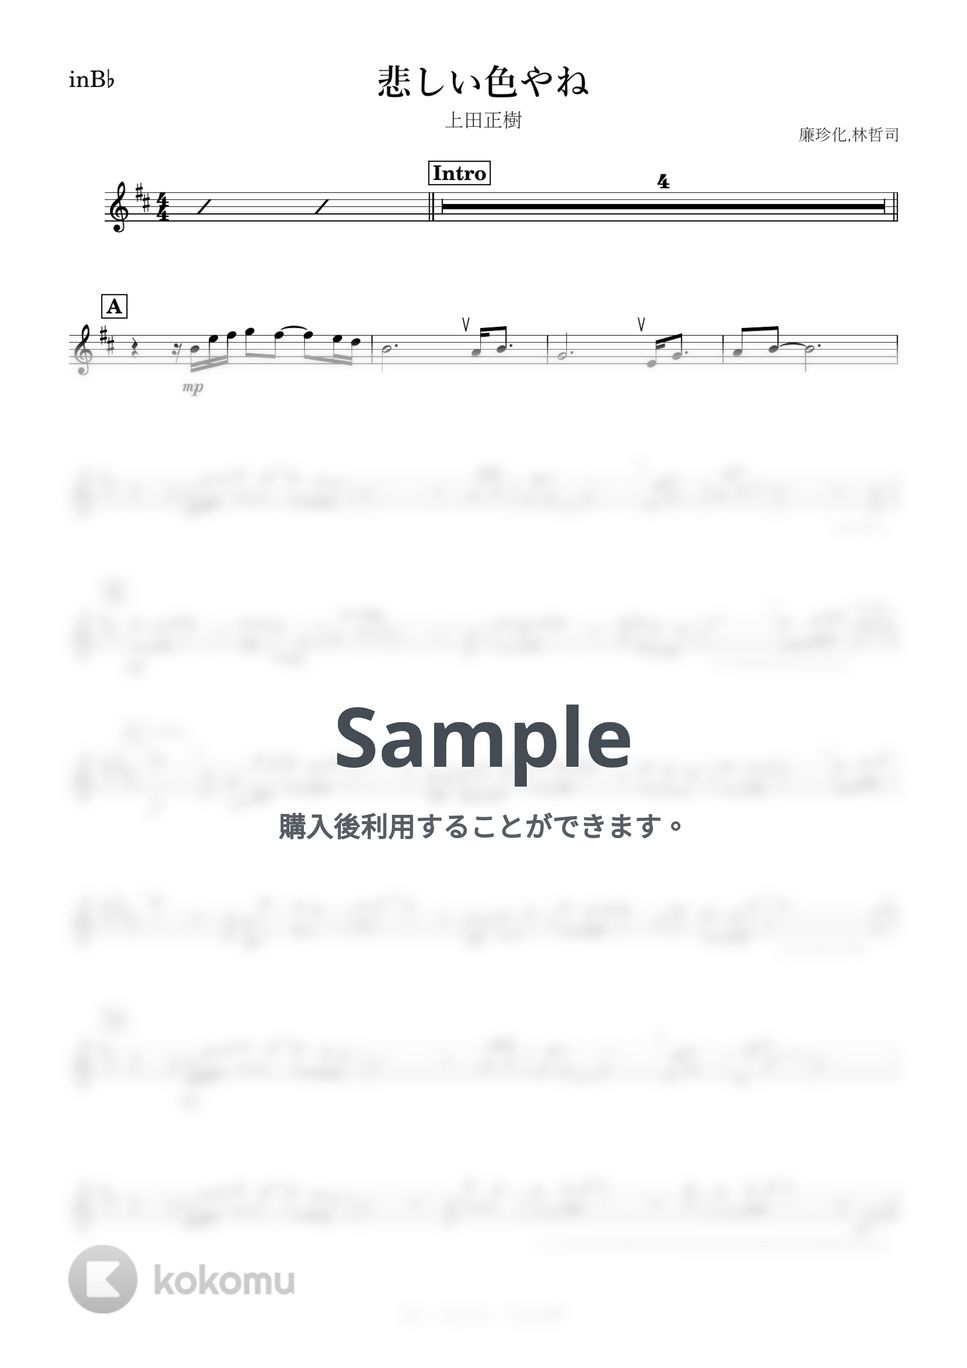 上田正樹 - 悲しい色やね (B♭) by kanamusic